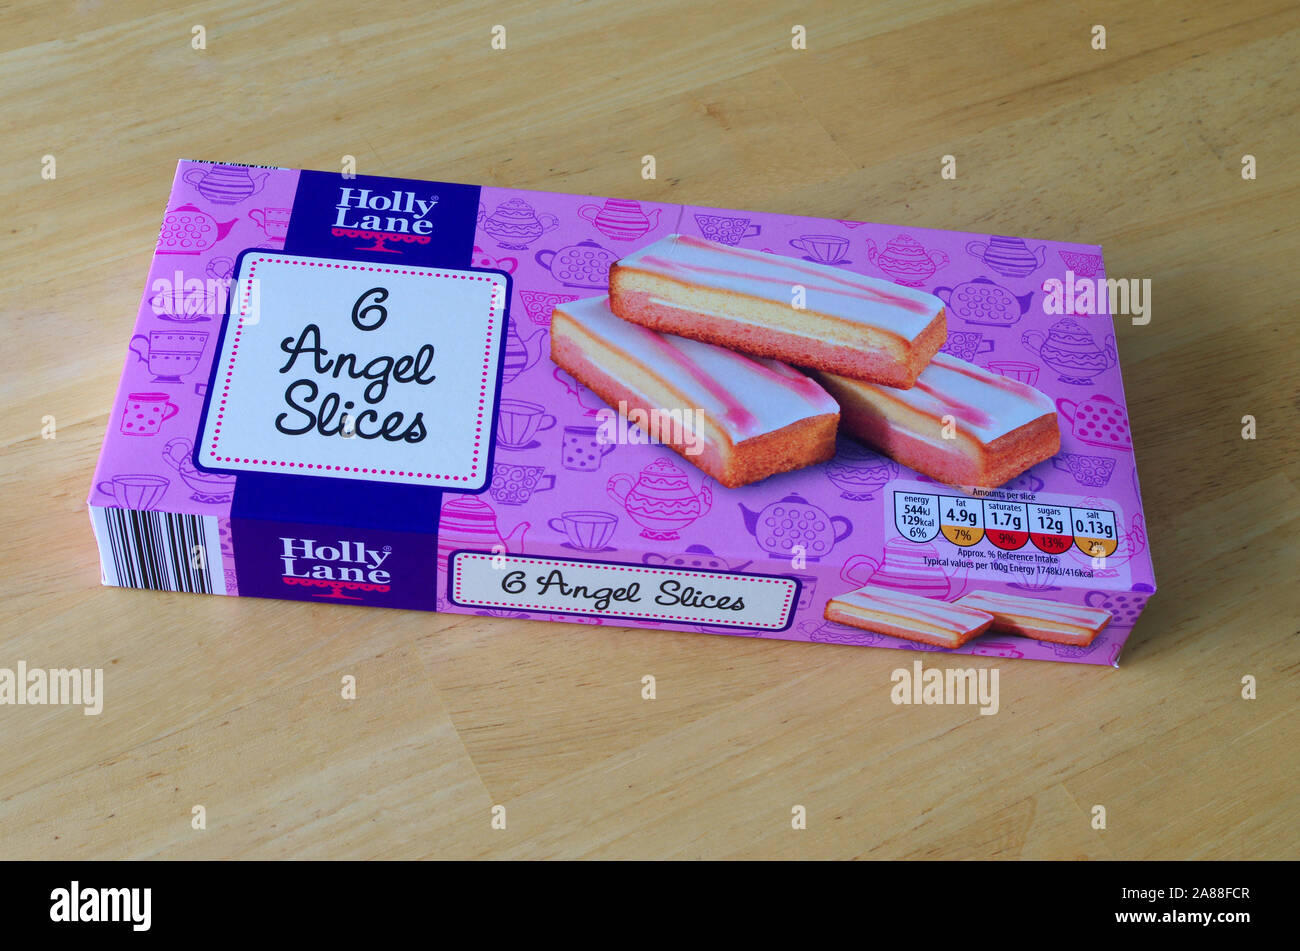 Packet of Holly Lane ( Aldi Supermarket ) 6 Angel Cake Slices, UK Stock Photo